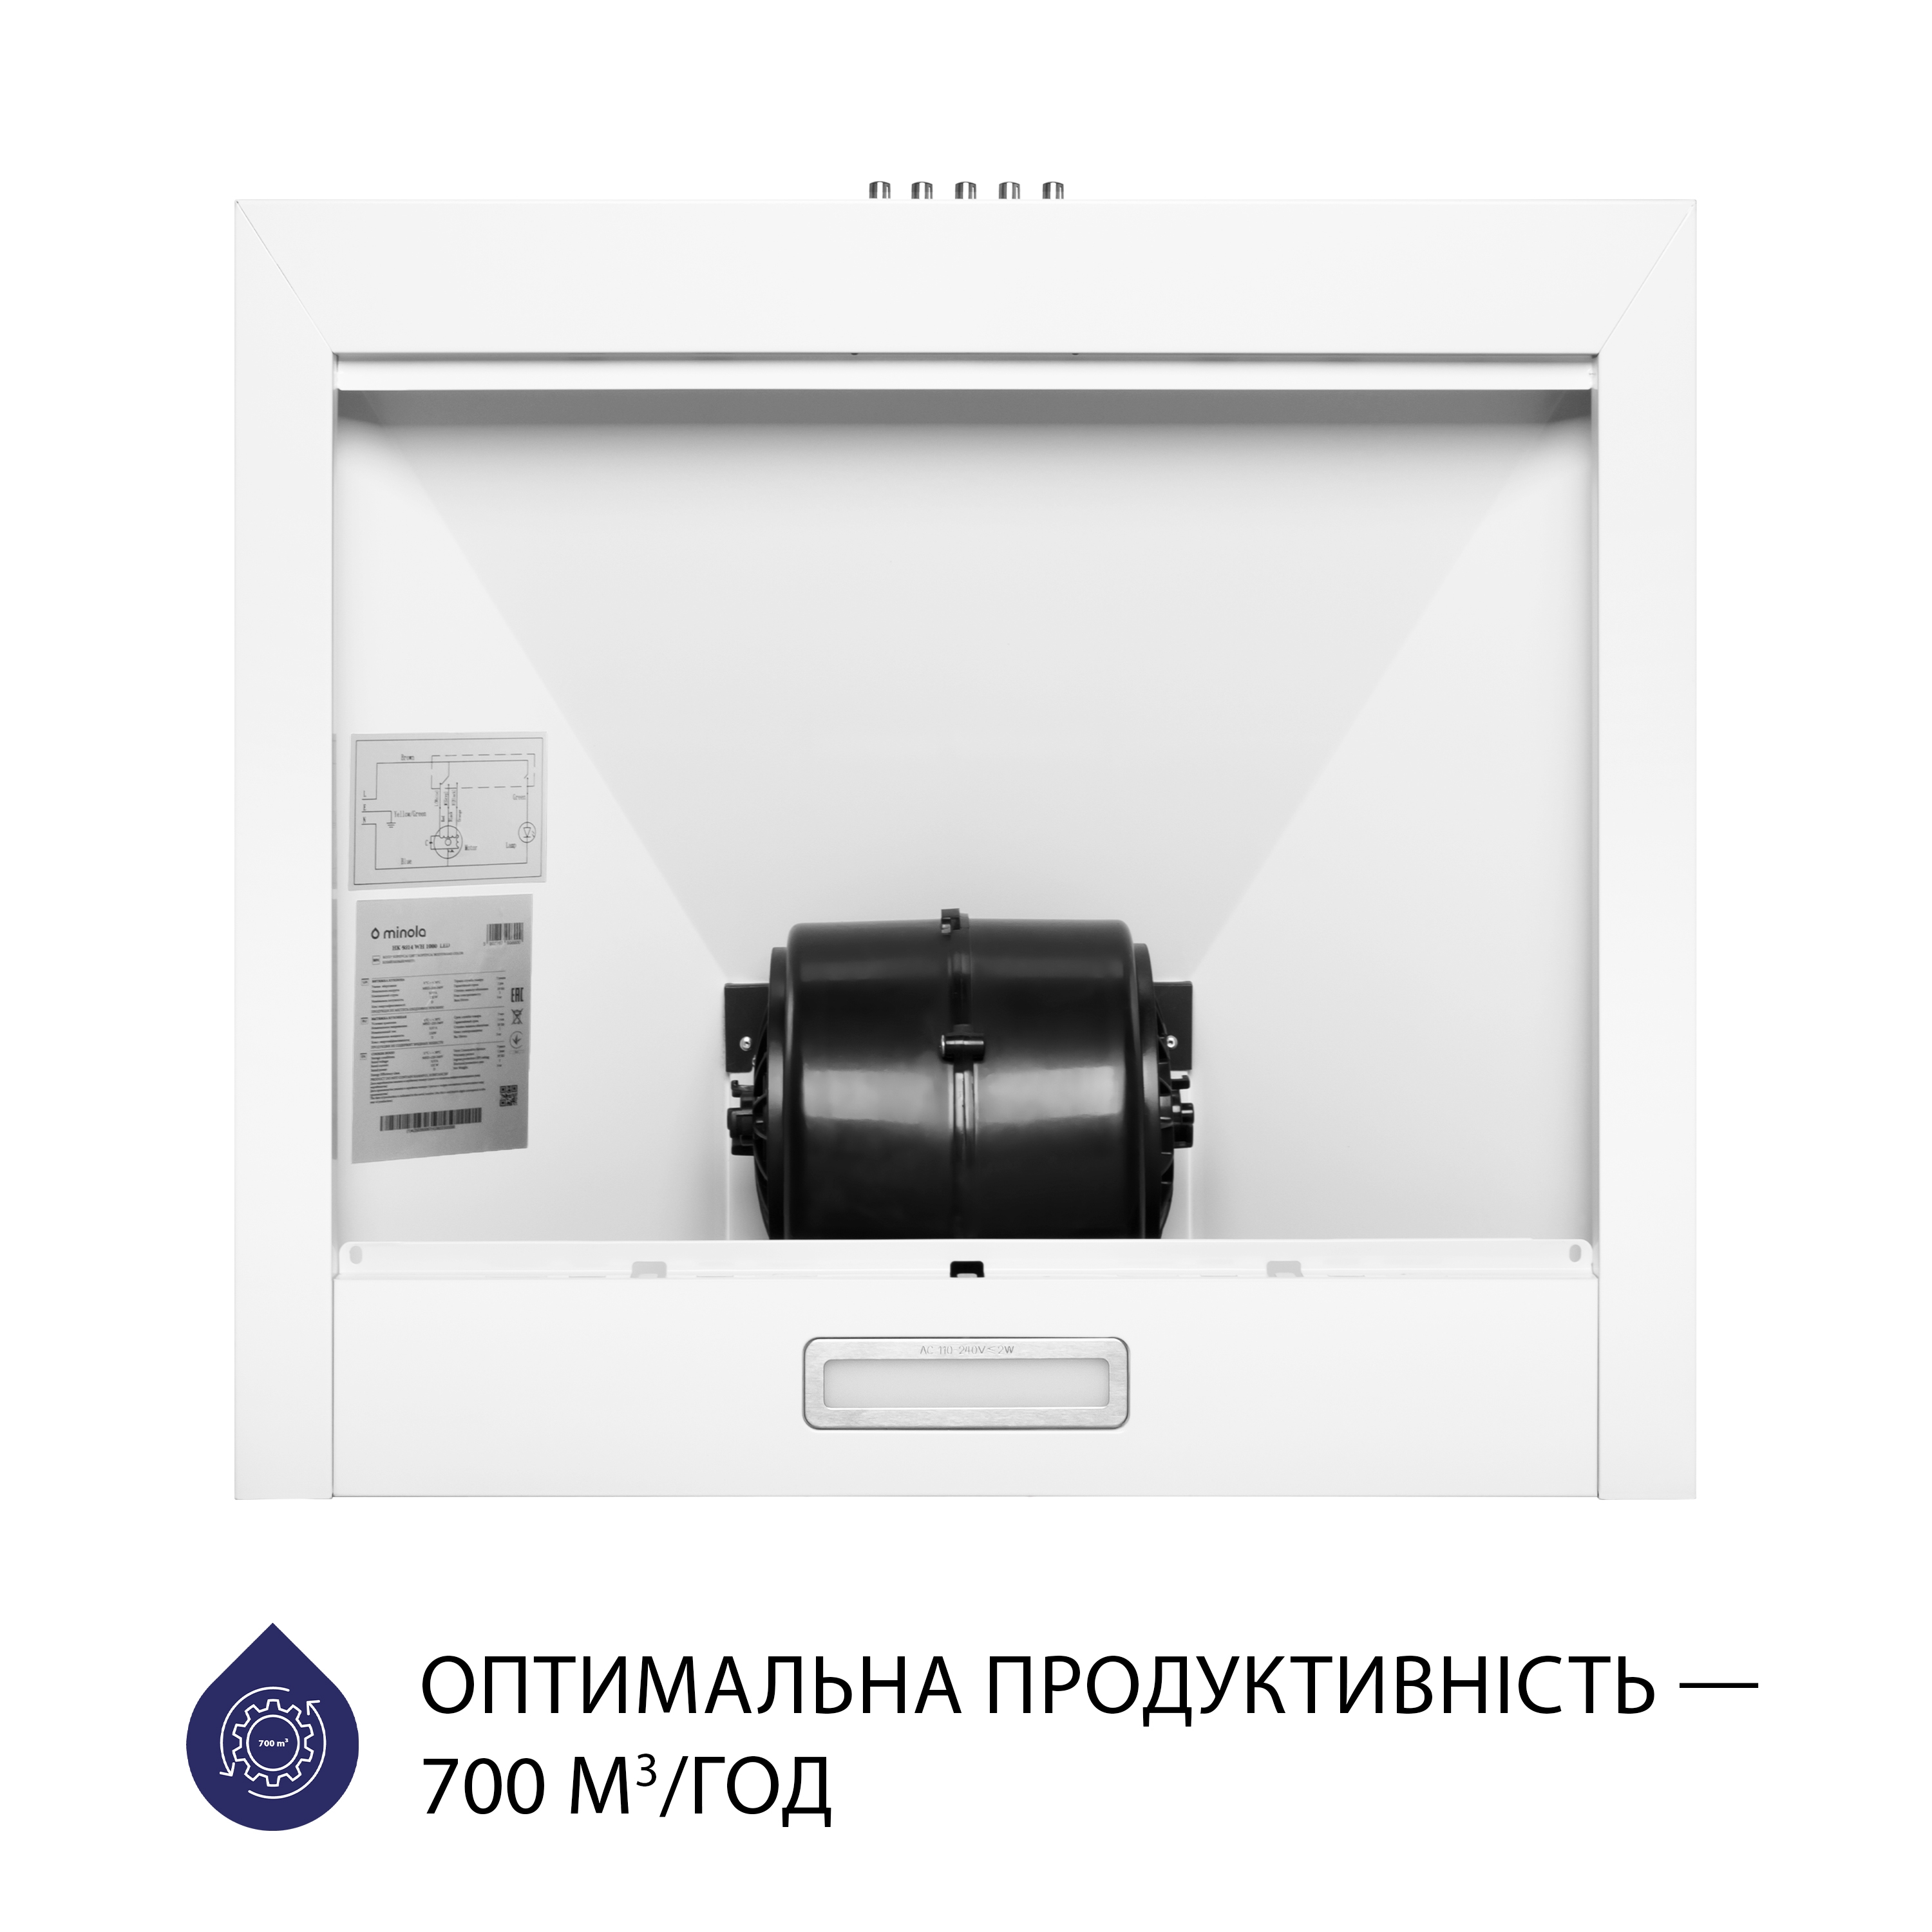 Витяжка кухонная купольная Minola HK 5214 WH 700 LED инструкция - изображение 6